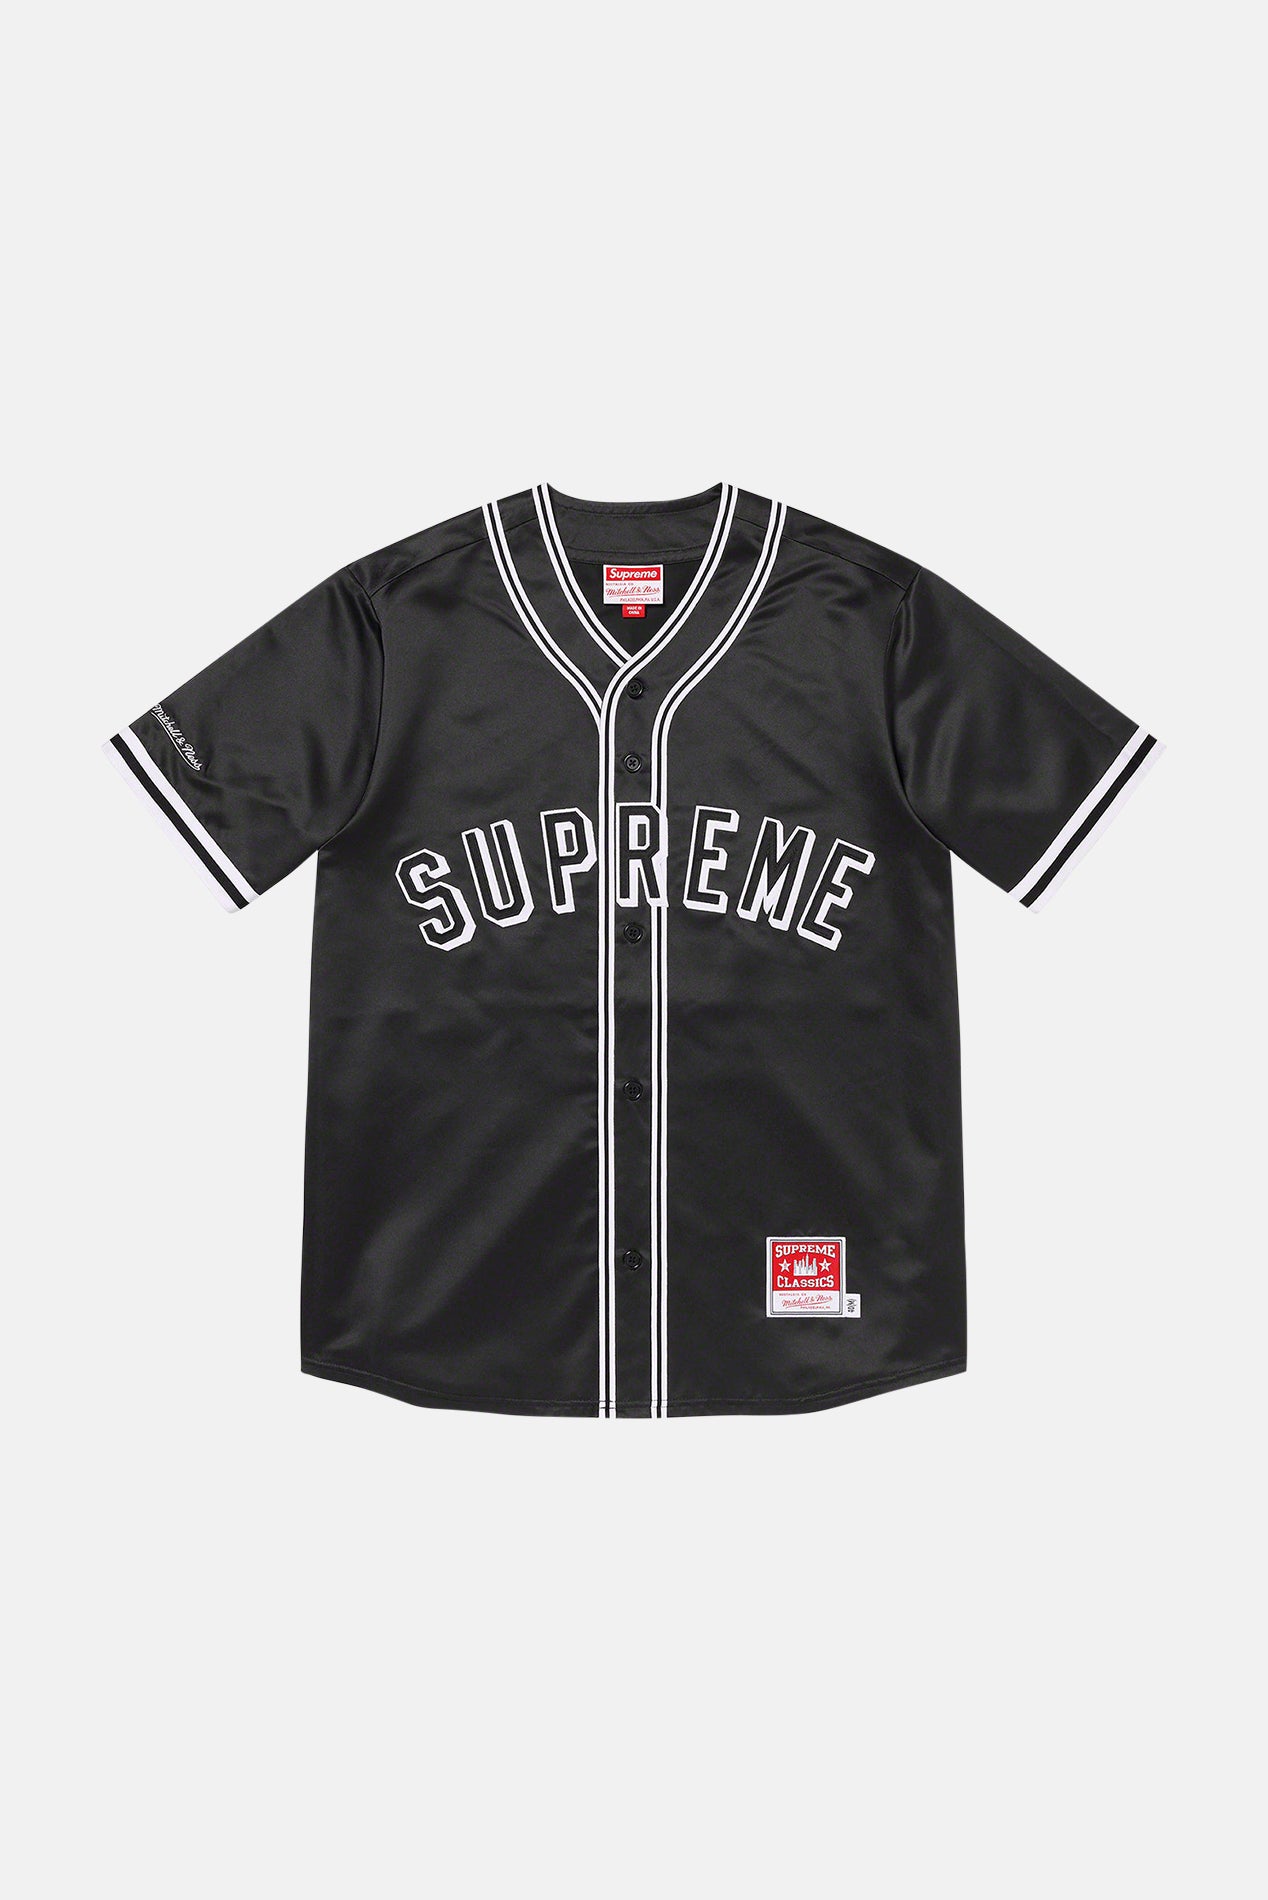 Supreme Corduroy Baseball Jersey black M